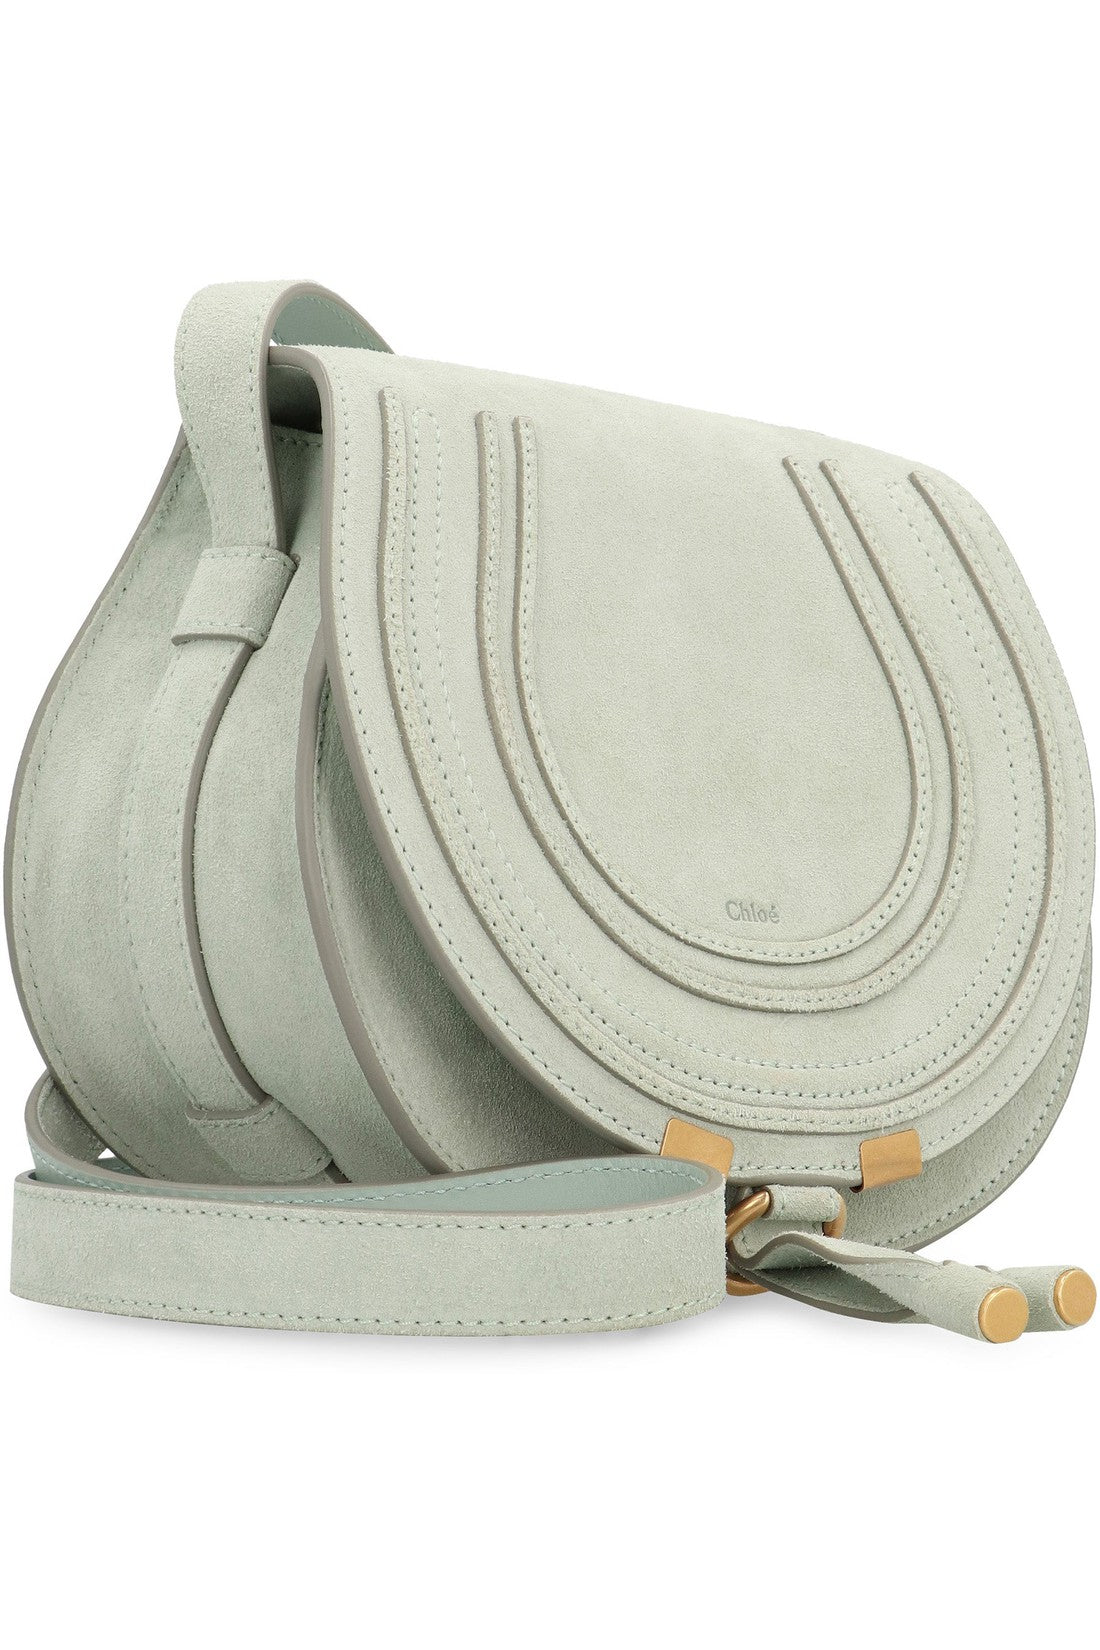 Chloé-OUTLET-SALE-Marcie leather saddle bag-ARCHIVIST